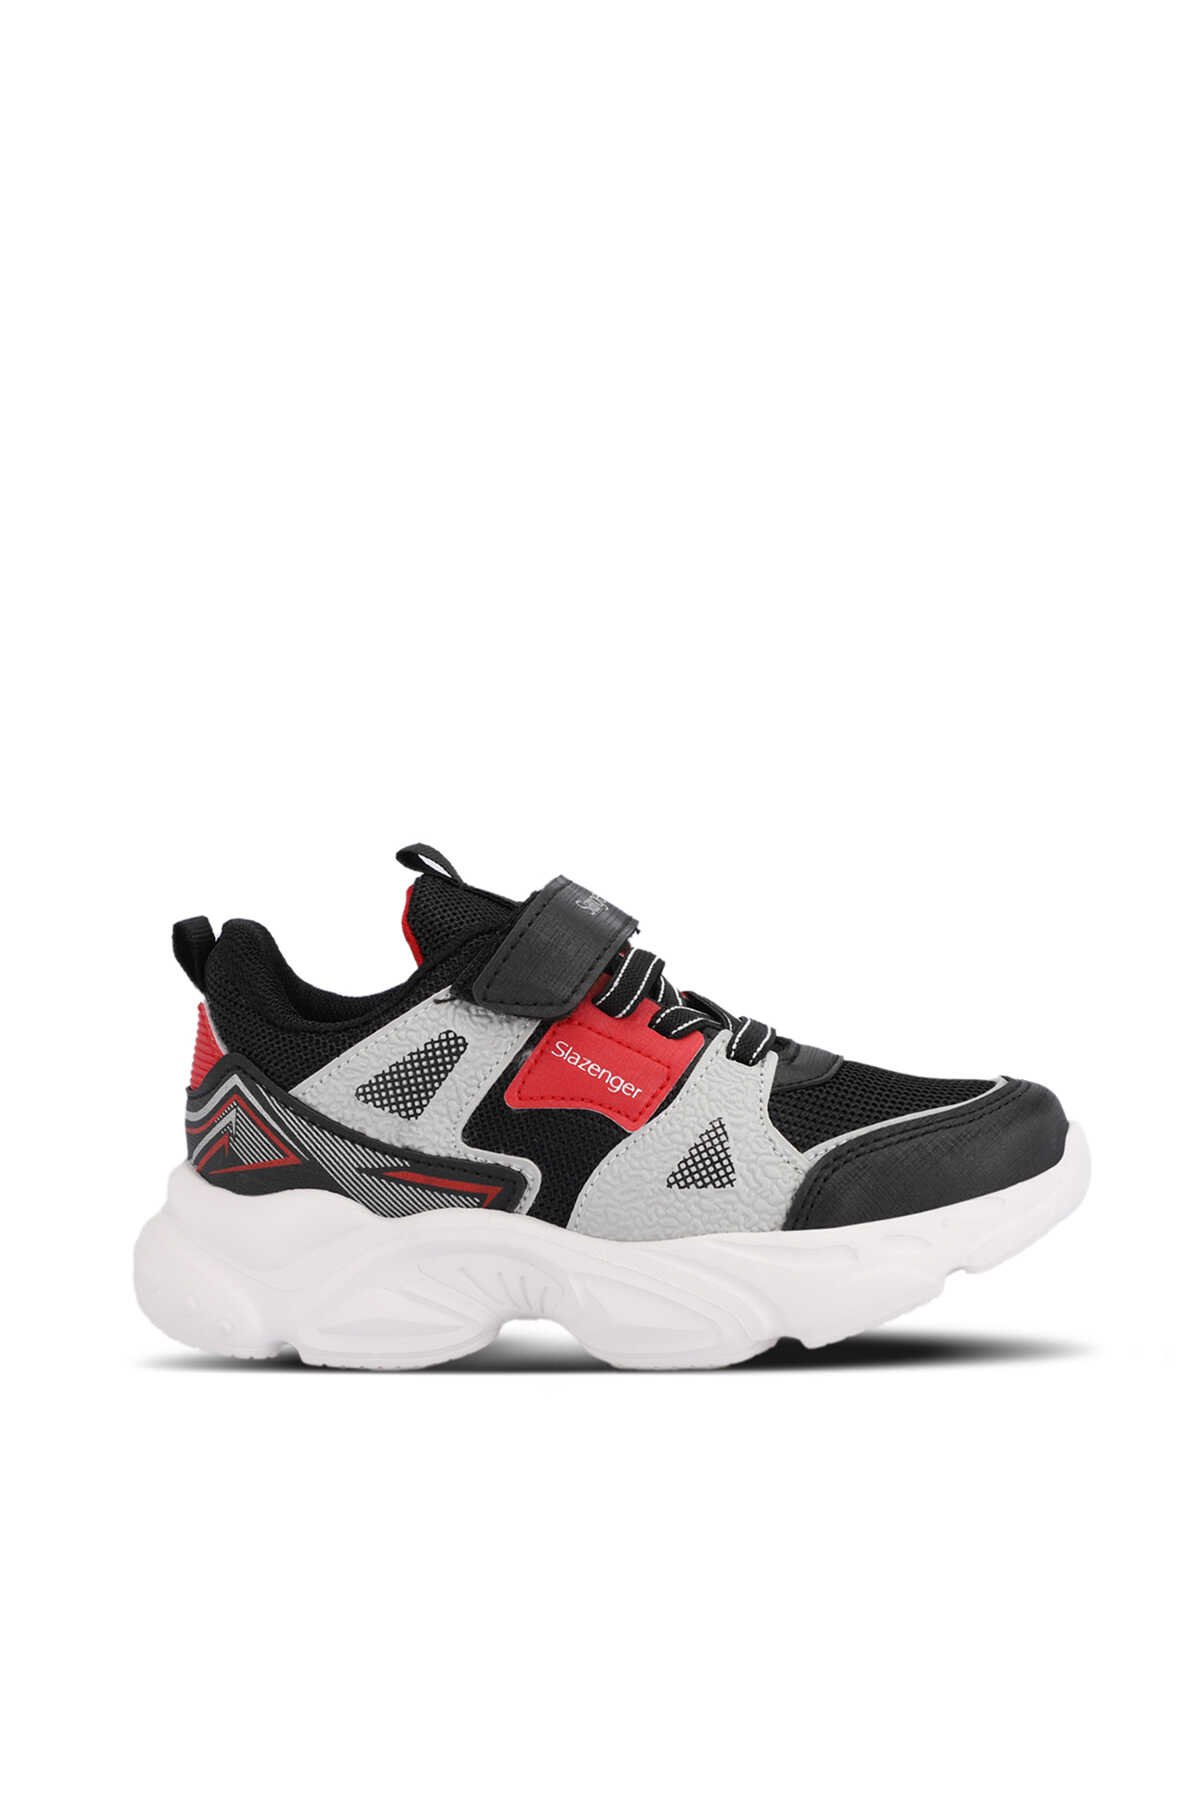 Slazenger - Slazenger NELSON Unisex Çocuk Sneaker Ayakkabı Siyah / Kırmızı